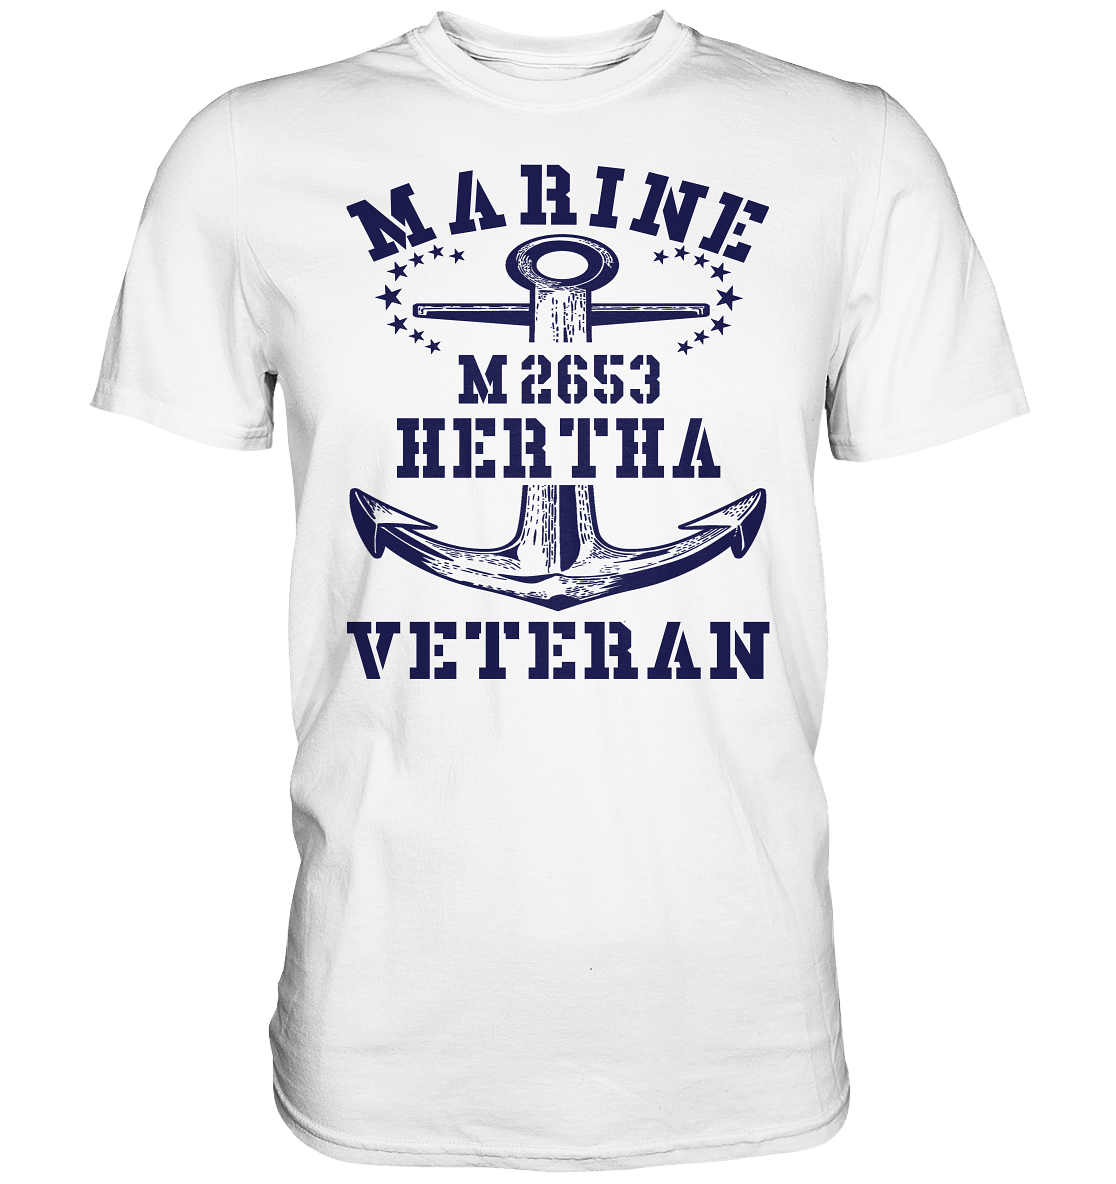 BiMi M2653 H.E.R.T.H.A. Marine Veteran - Premium Shirt